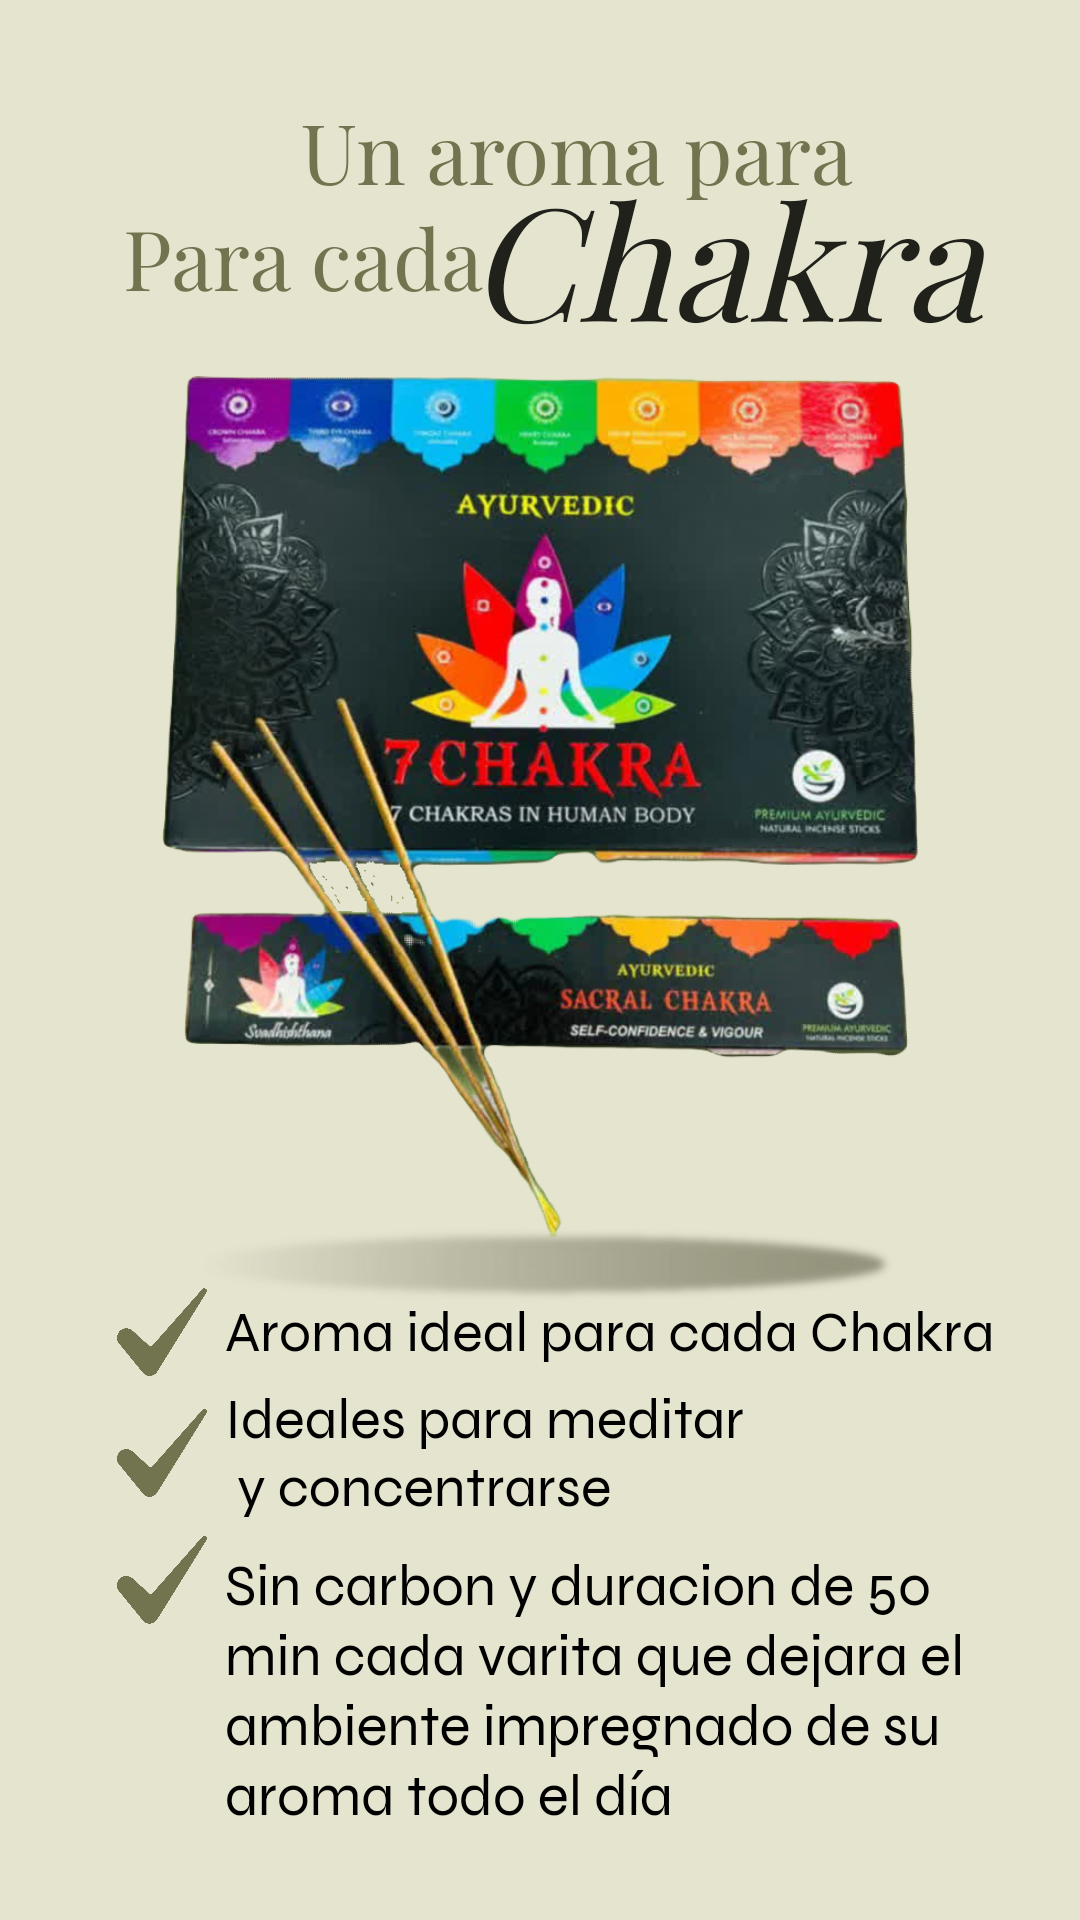 Hem 7 varillas de incienso de chakras Agarbatti Masala de calidad  enrolladas a mano en la India para curación, meditación, yoga, relajación,  oración